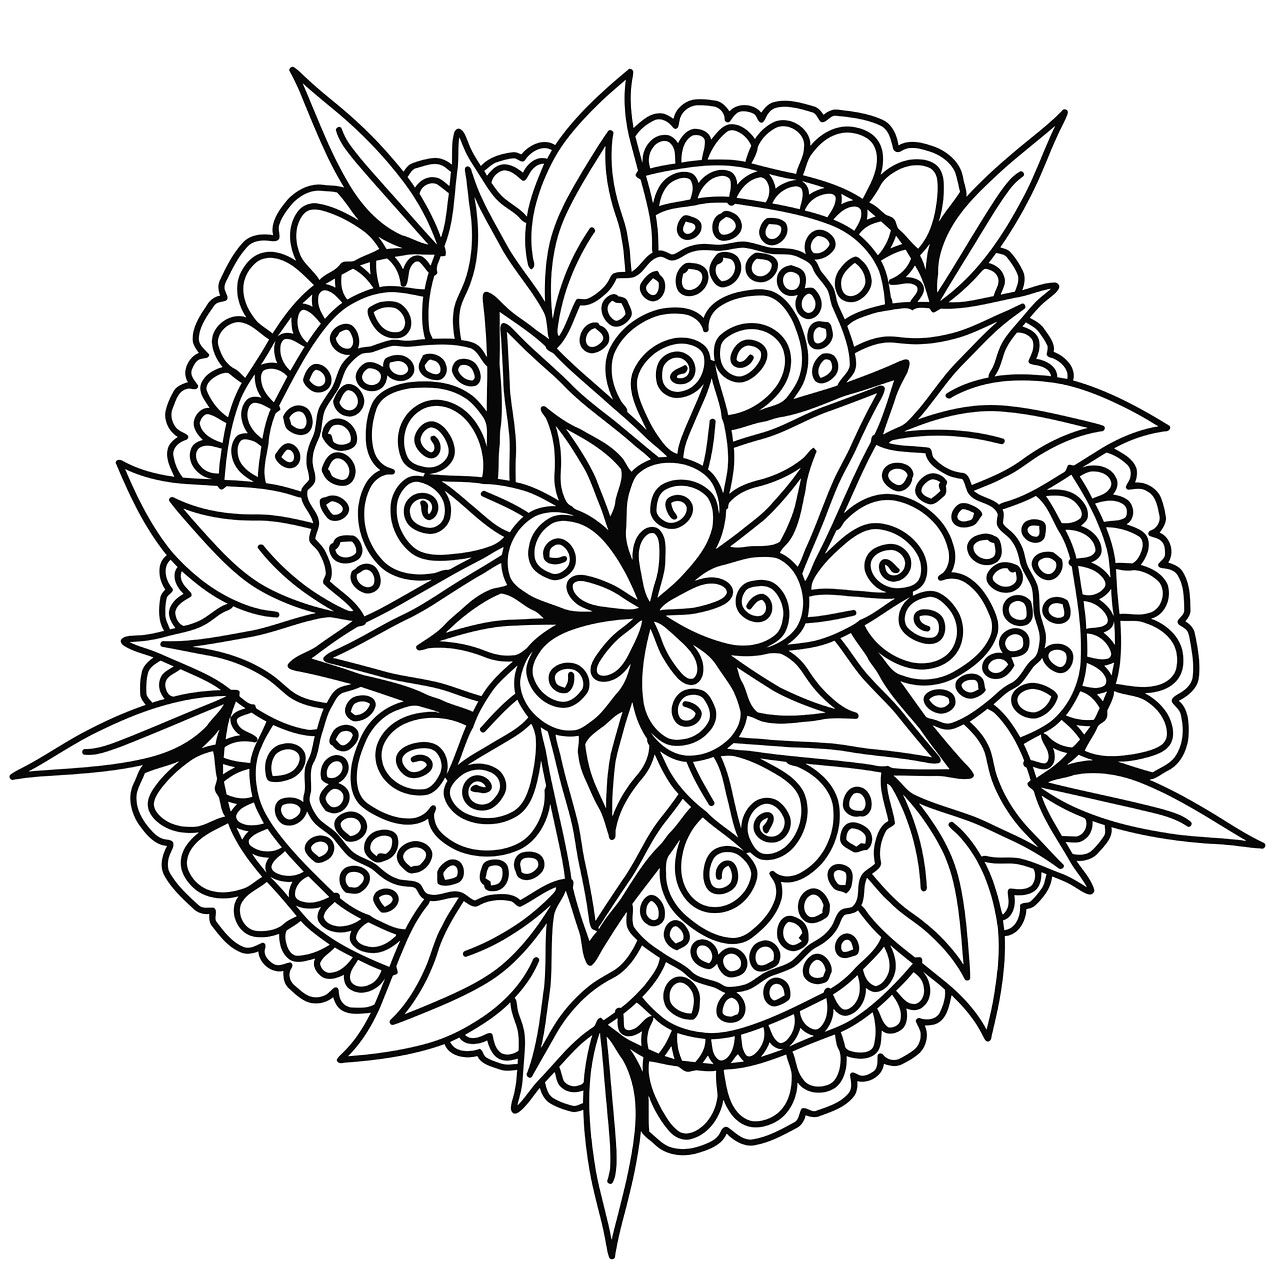 Linee pulite per un Mandala vegetale disegnato a mano, con bellissime foglie, fiori ed elementi astratti.